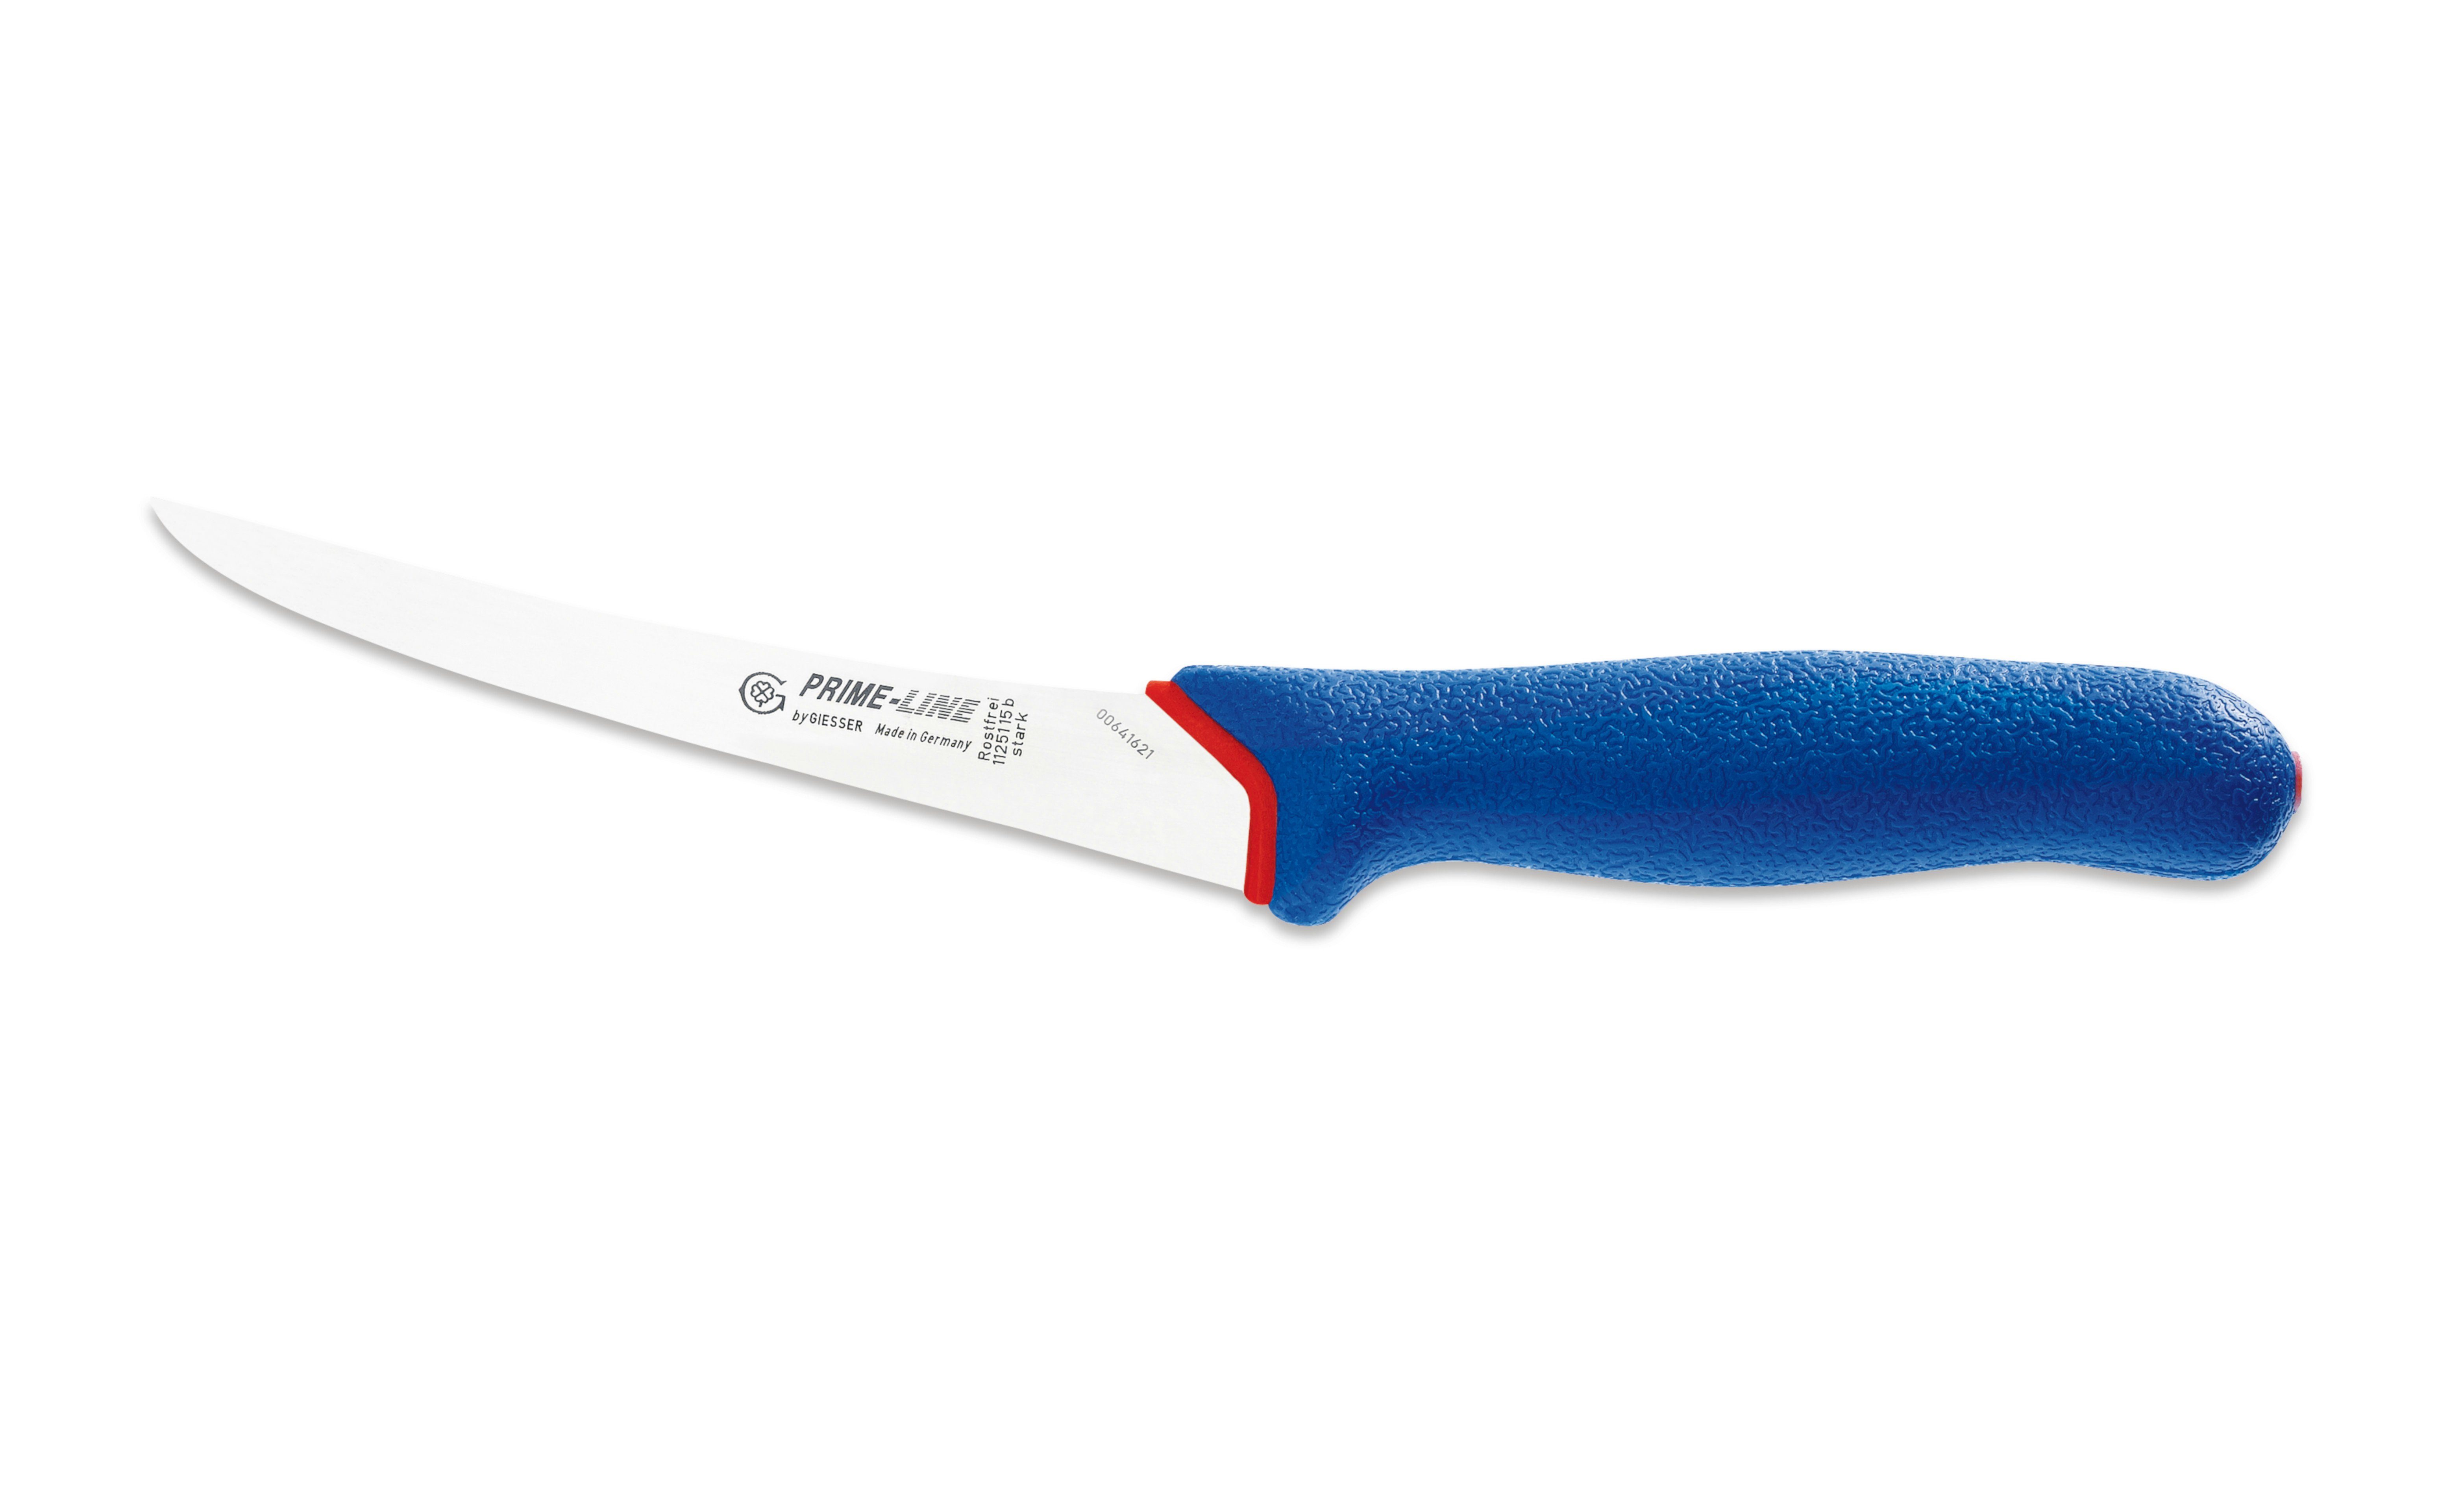 Giesser Messer Ausbeinmesser Fleischermesser 11250 13/15, weicher rutschfest, Griff PrimeLine, blau